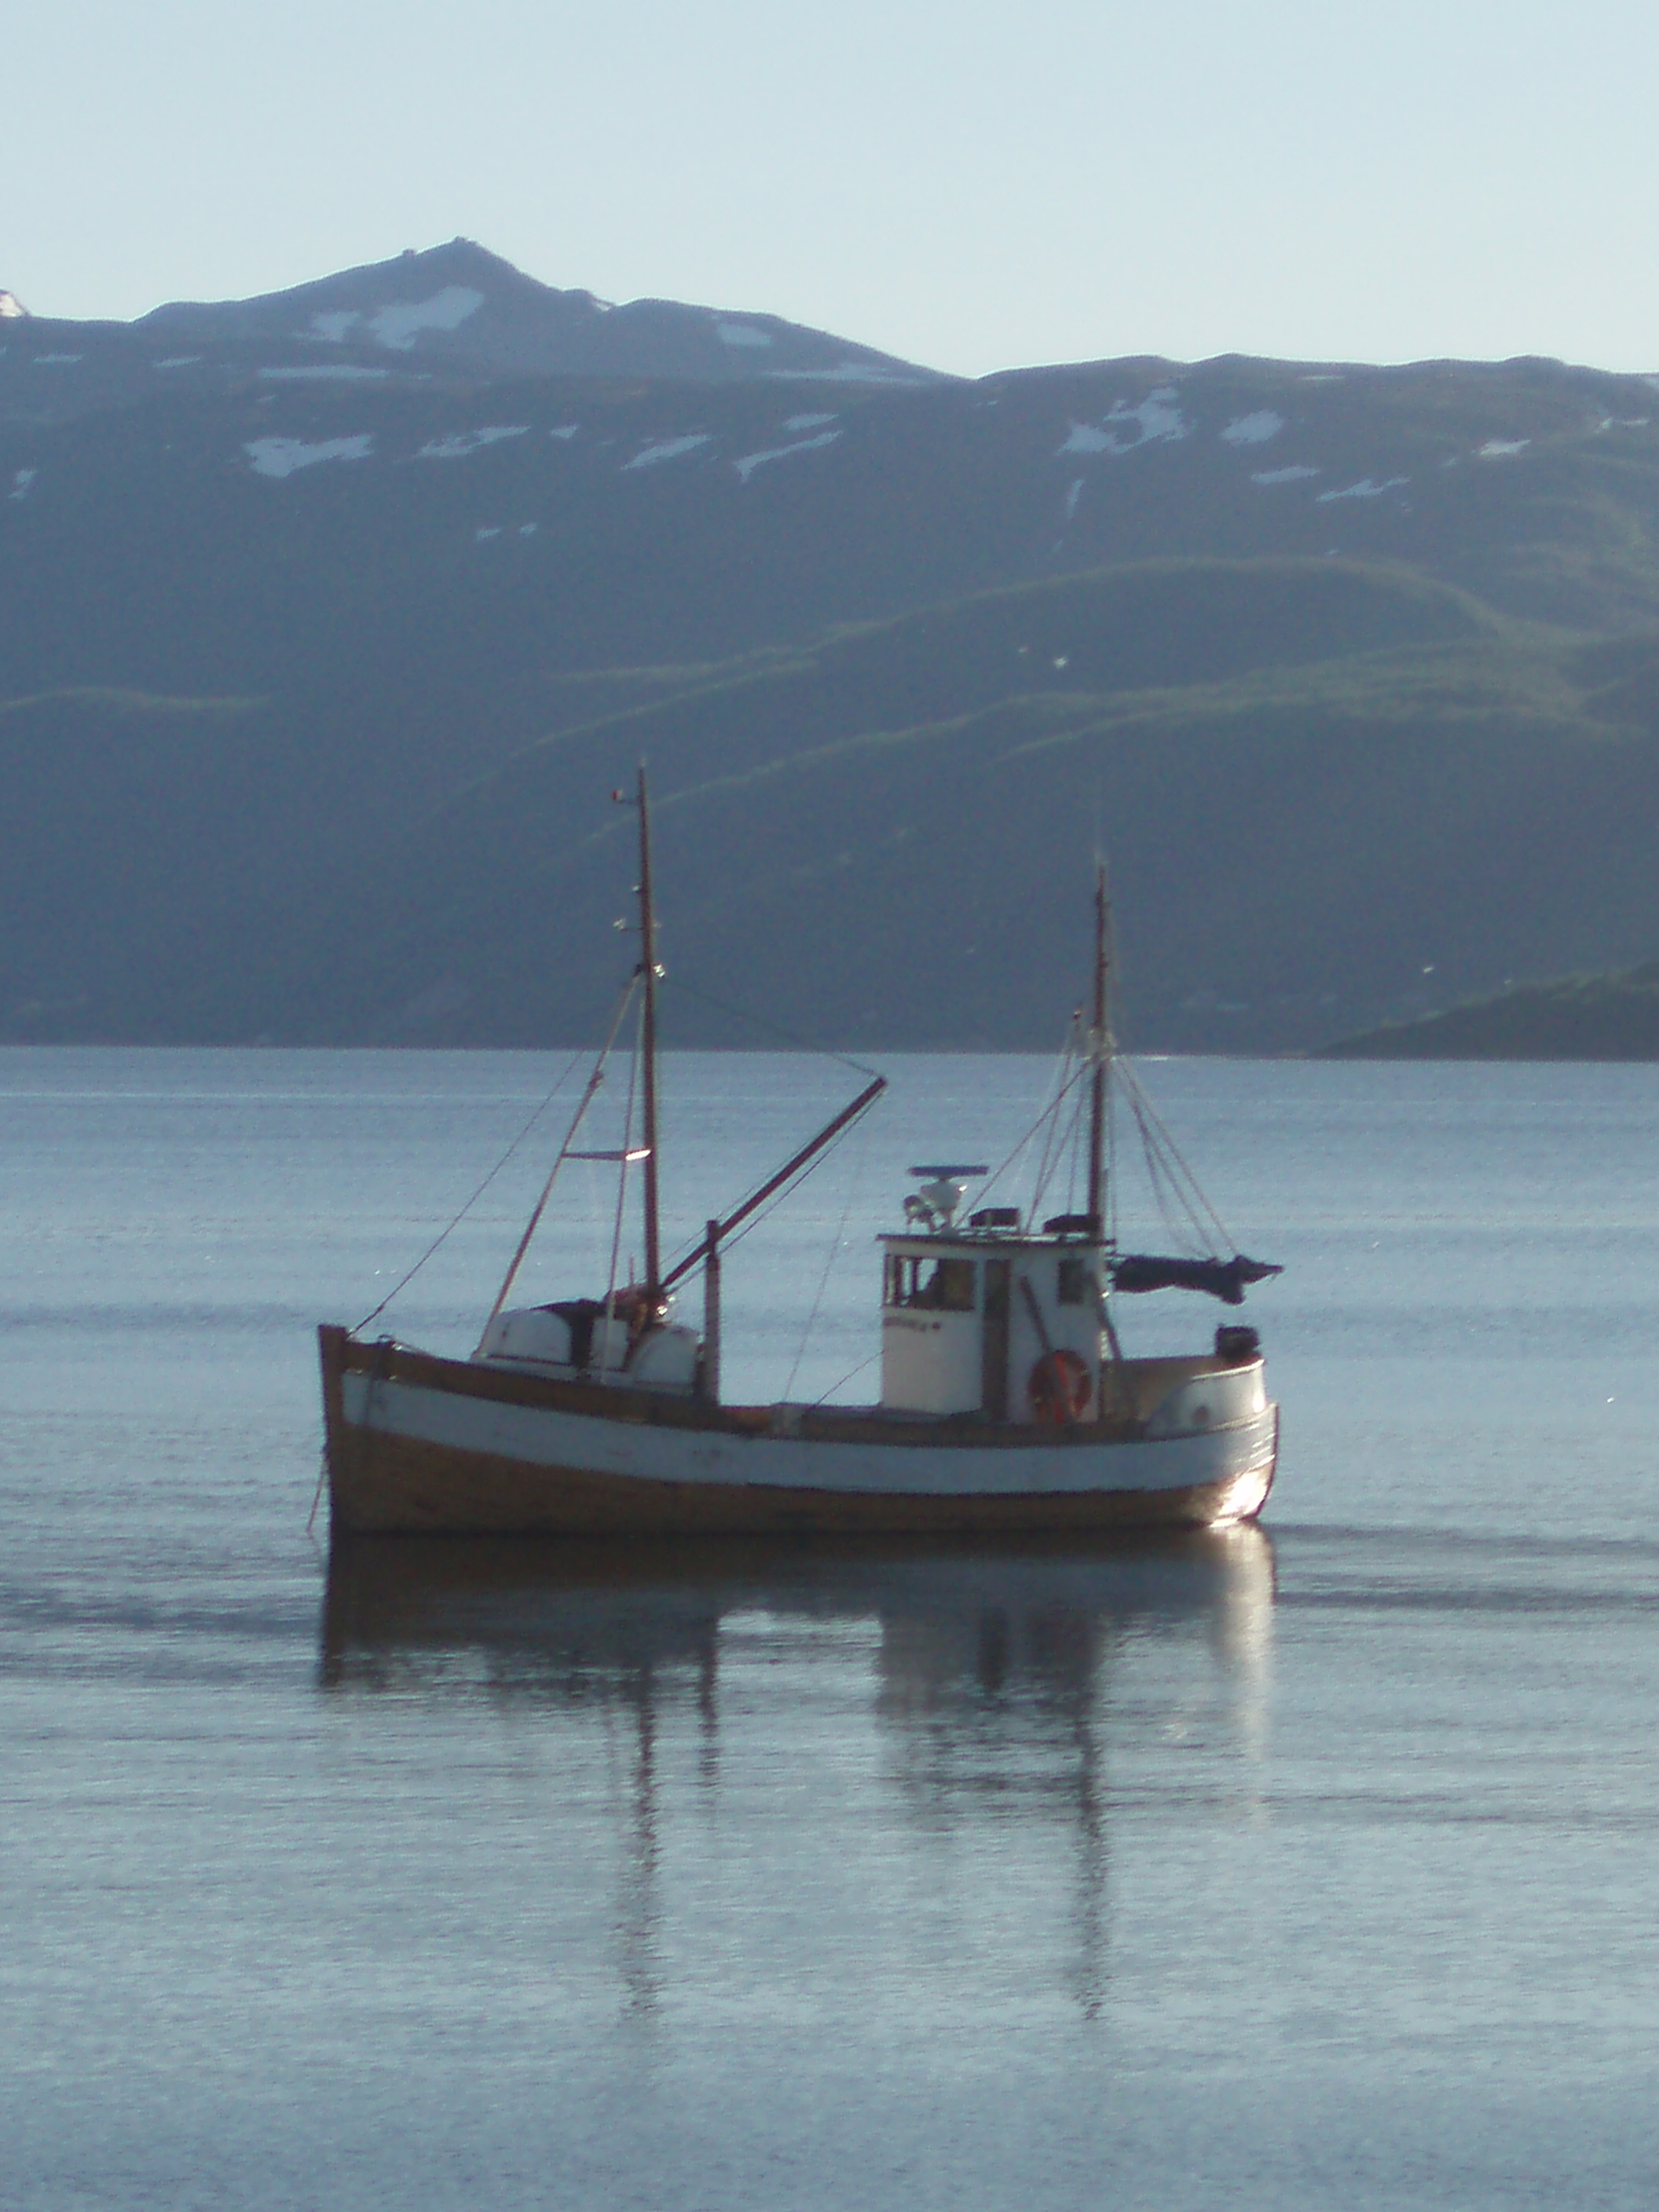 File:Fishing boat in Altafjorden.JPG - Wikipedia